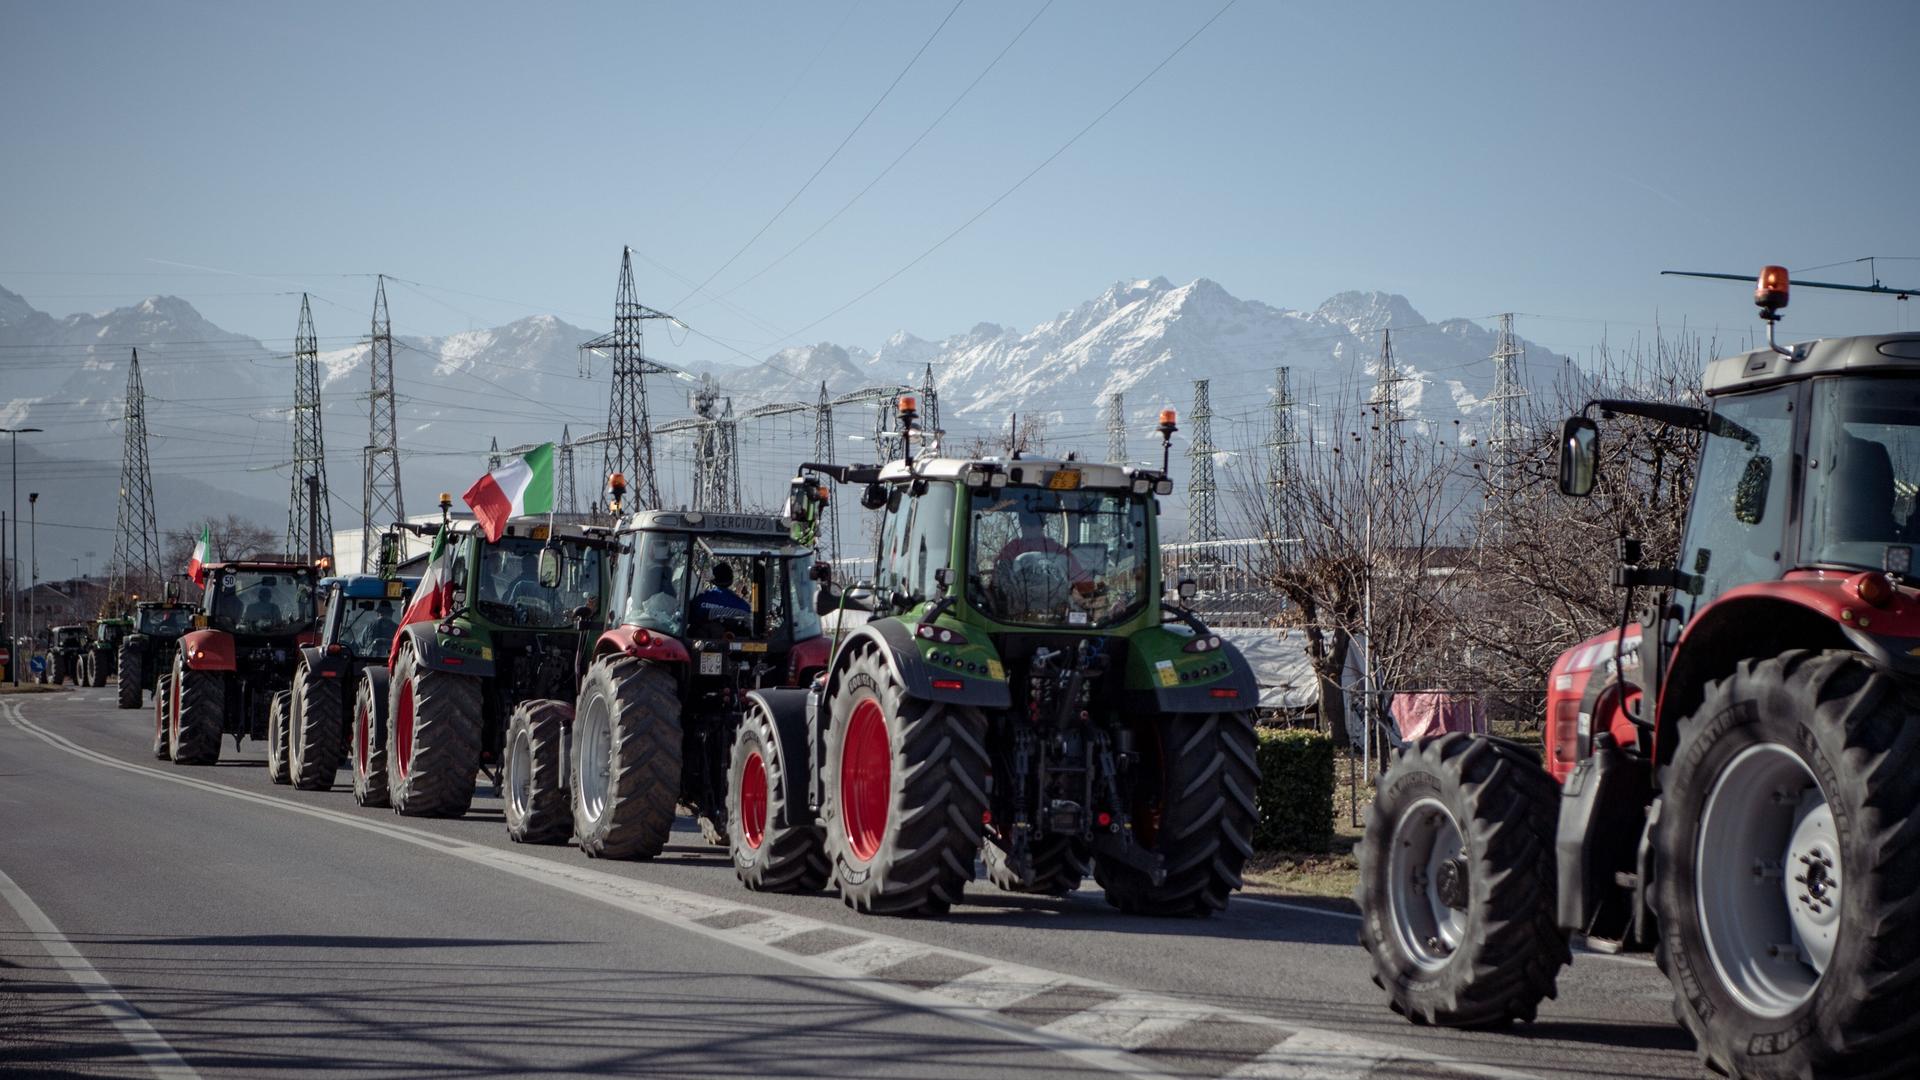 Italien, Cuneo: Der Protest der Landwirte, der bereits in verschiedenen Teilen Italiens und Europas gegen die EU-Agrarpolitik stattfand, kommt nach Cuneo.